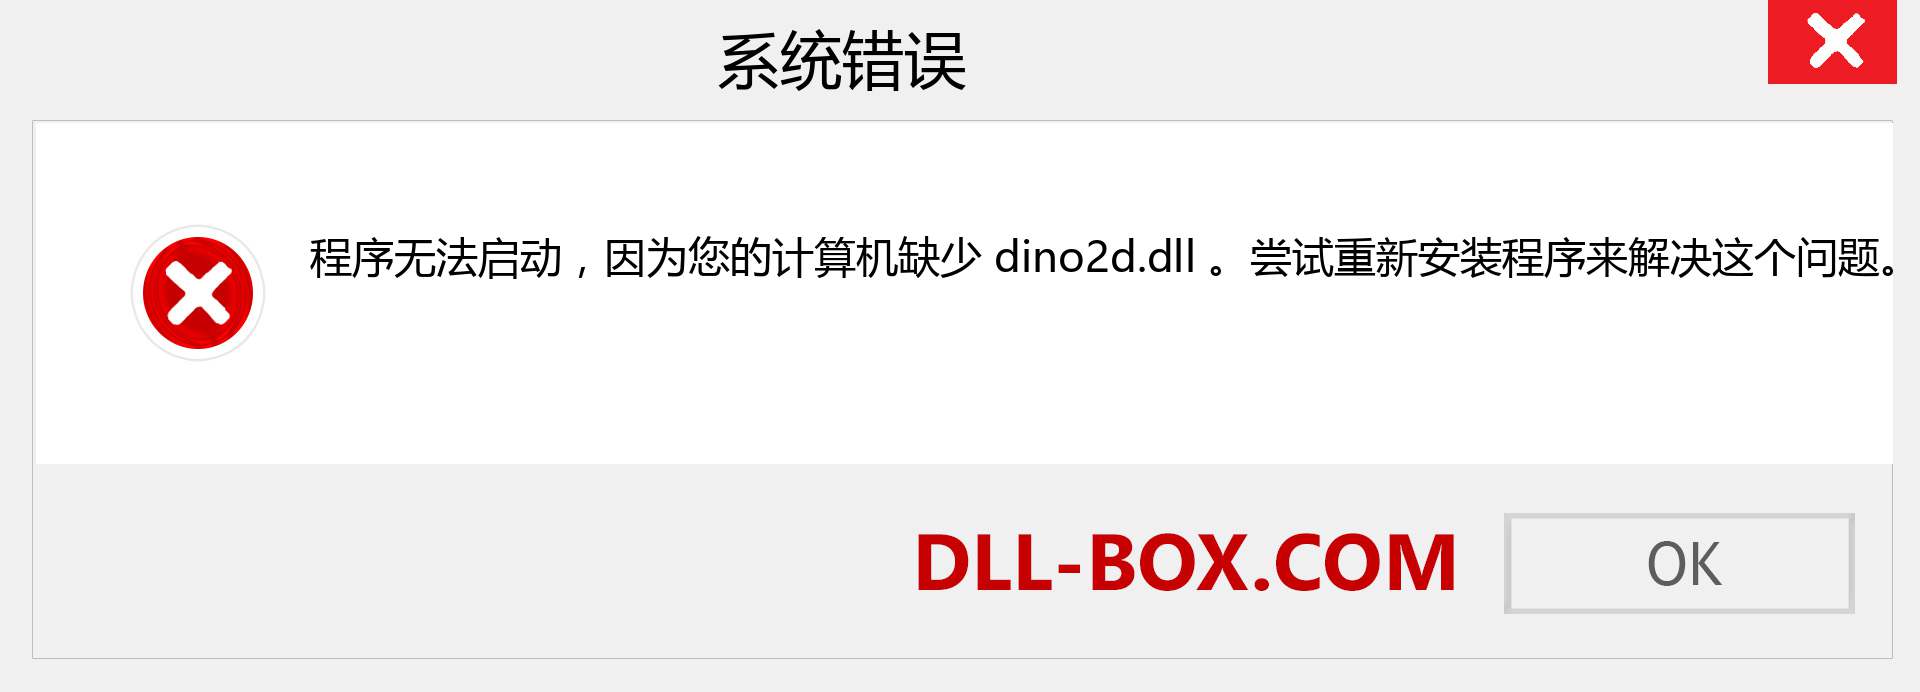 dino2d.dll 文件丢失？。 适用于 Windows 7、8、10 的下载 - 修复 Windows、照片、图像上的 dino2d dll 丢失错误